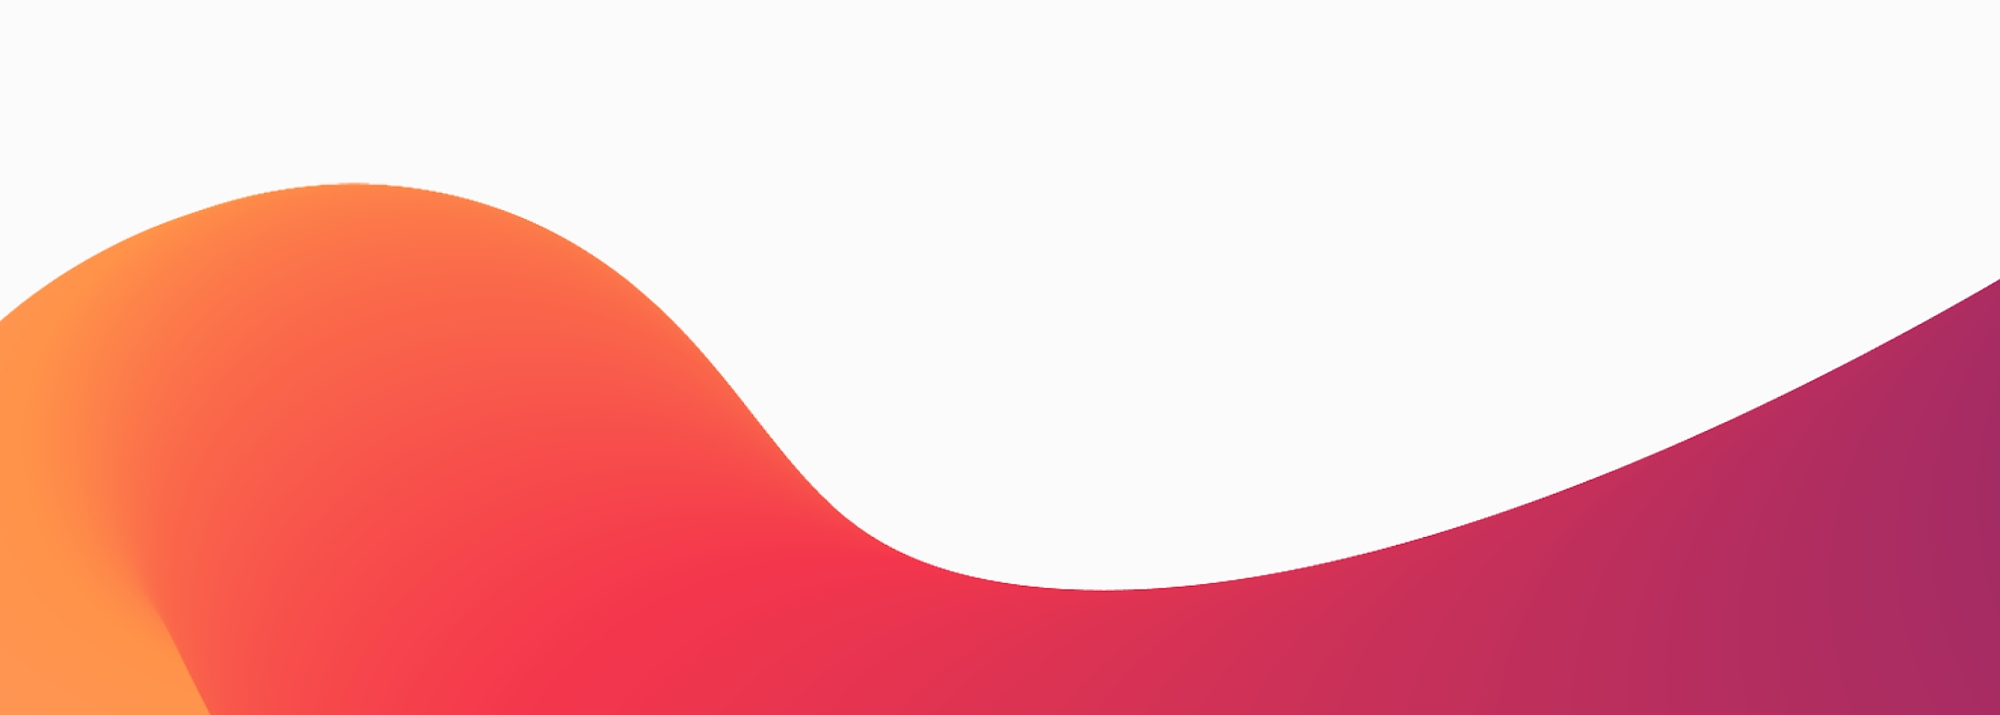 Un diseño abstracto que presenta una suave onda degradada con colores que pasan del naranja al rojo y al morado 